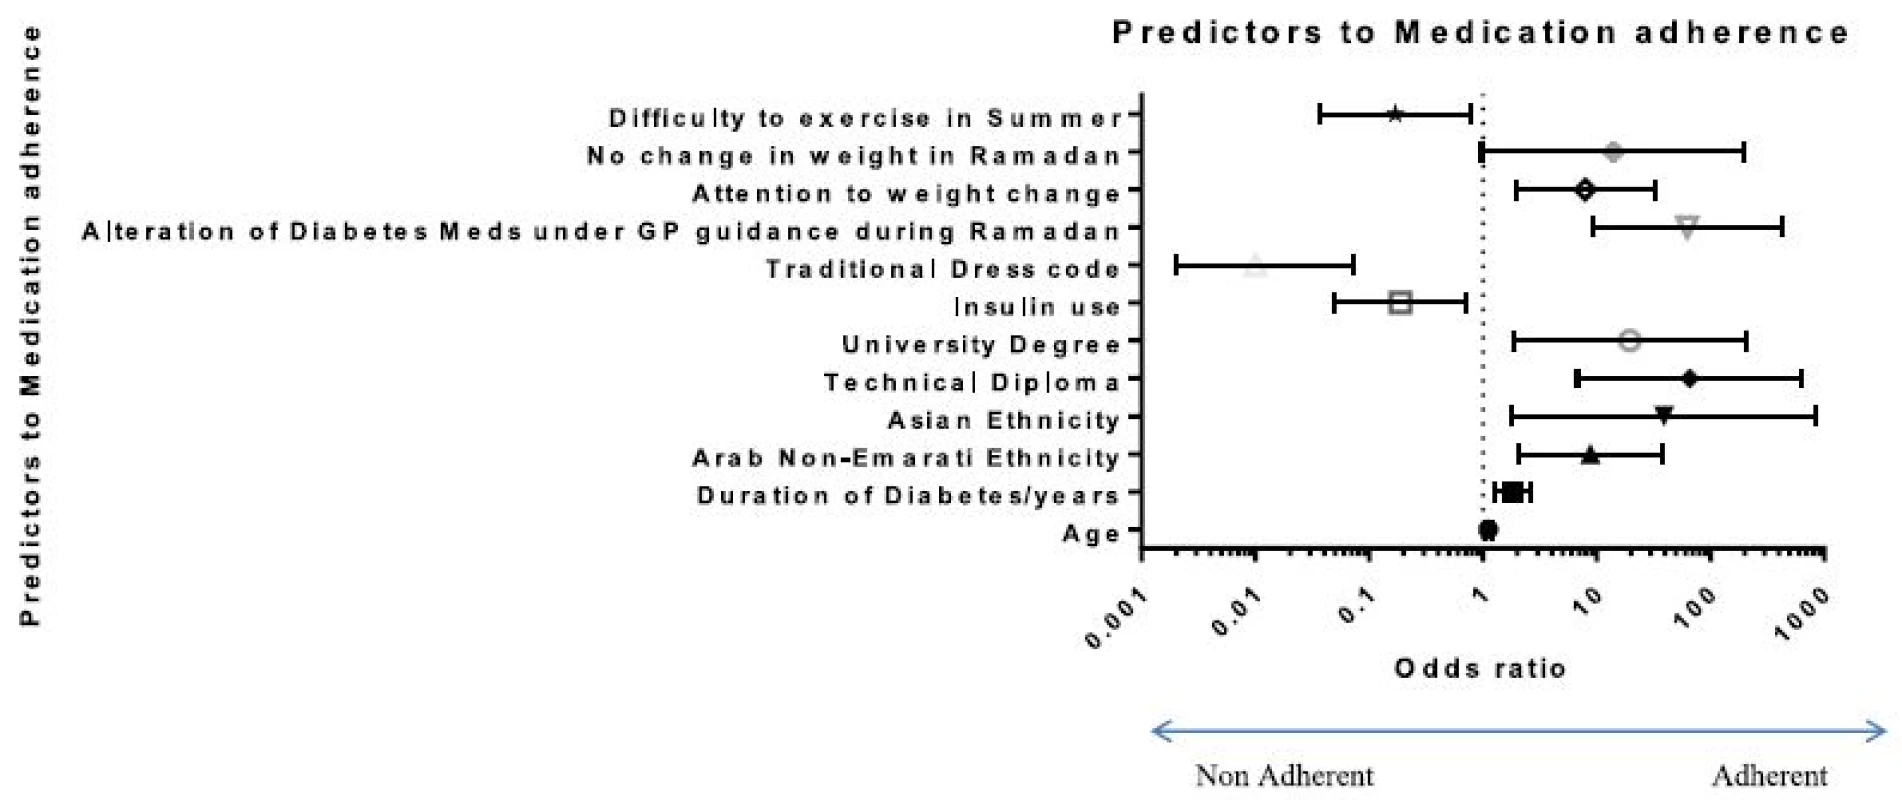 Predictors to medication adherence